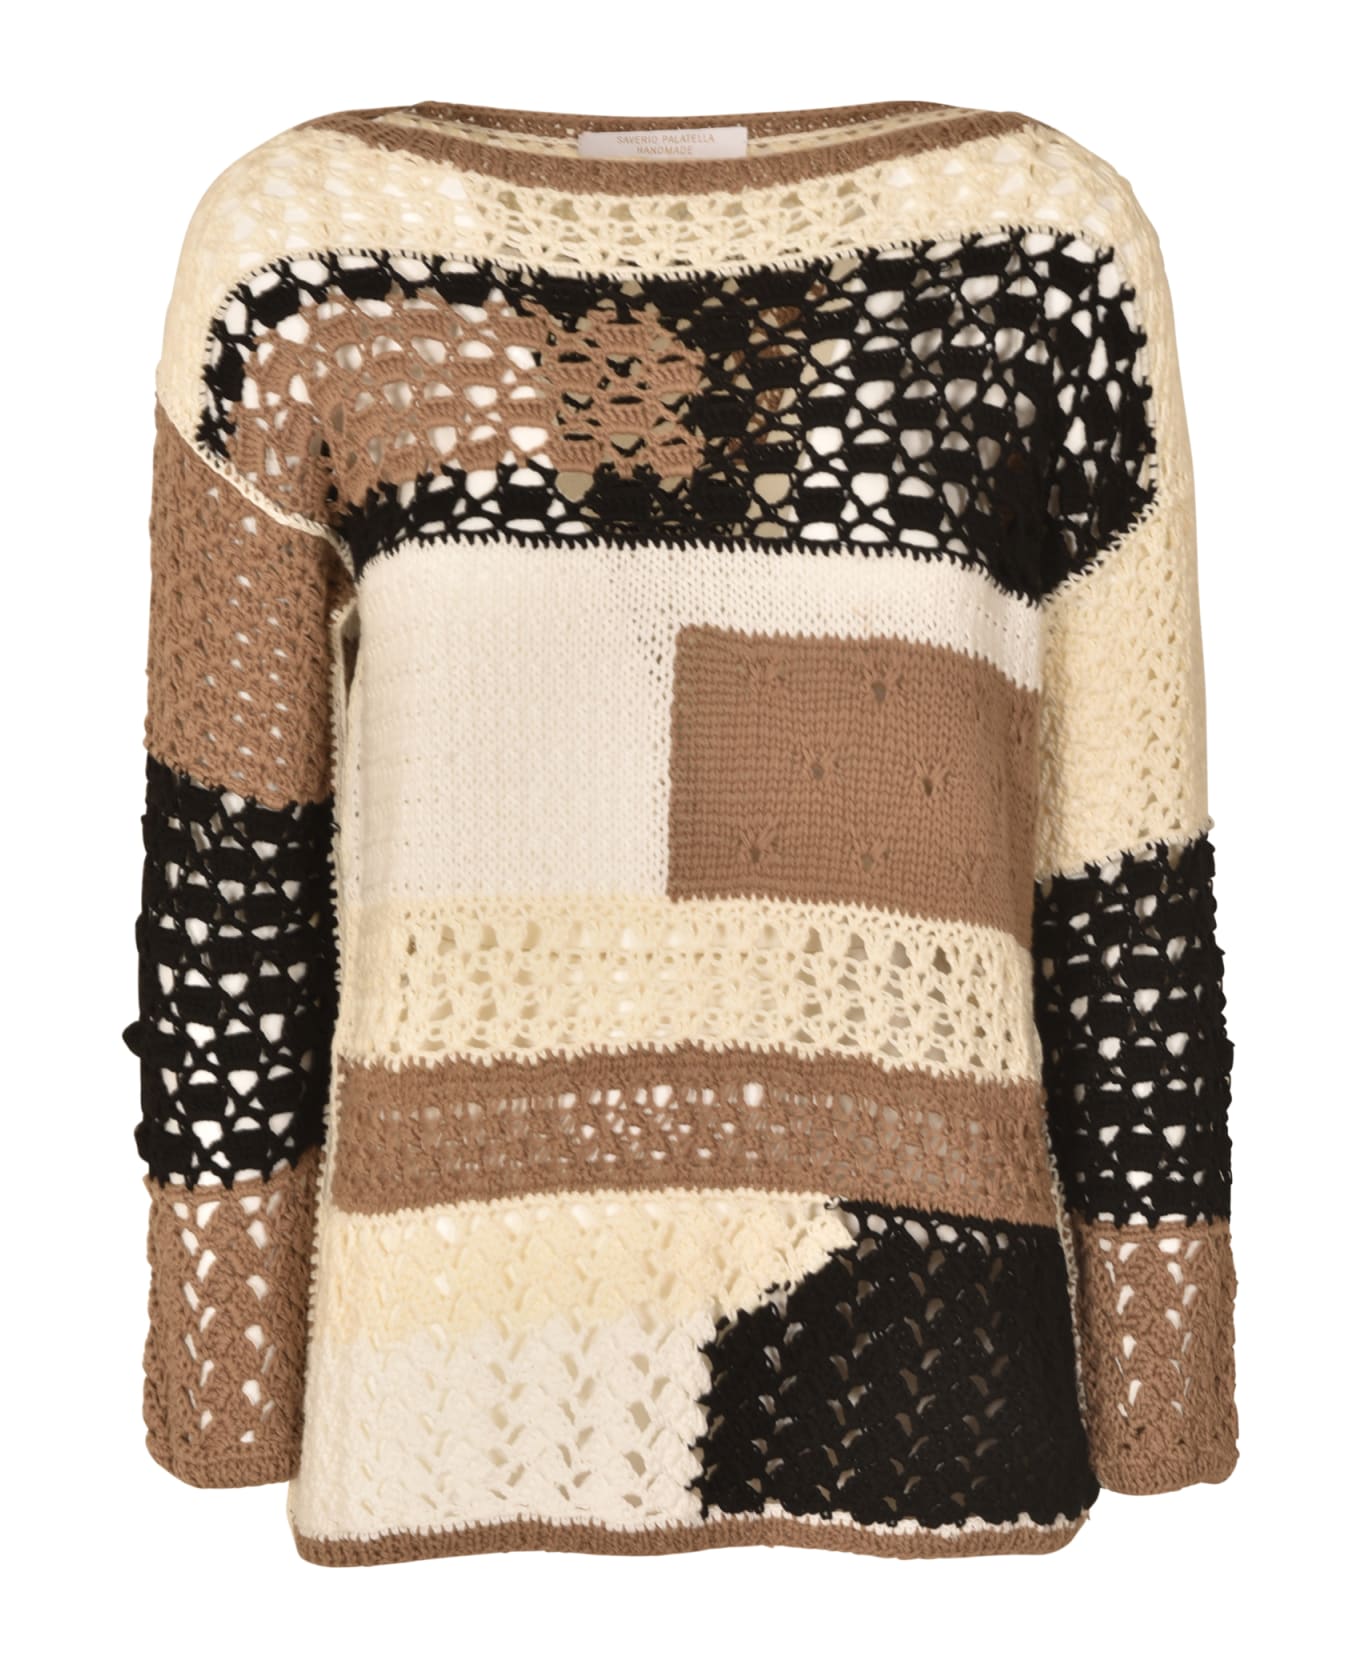 Saverio Palatella Crochet Knit Sweater - Natural